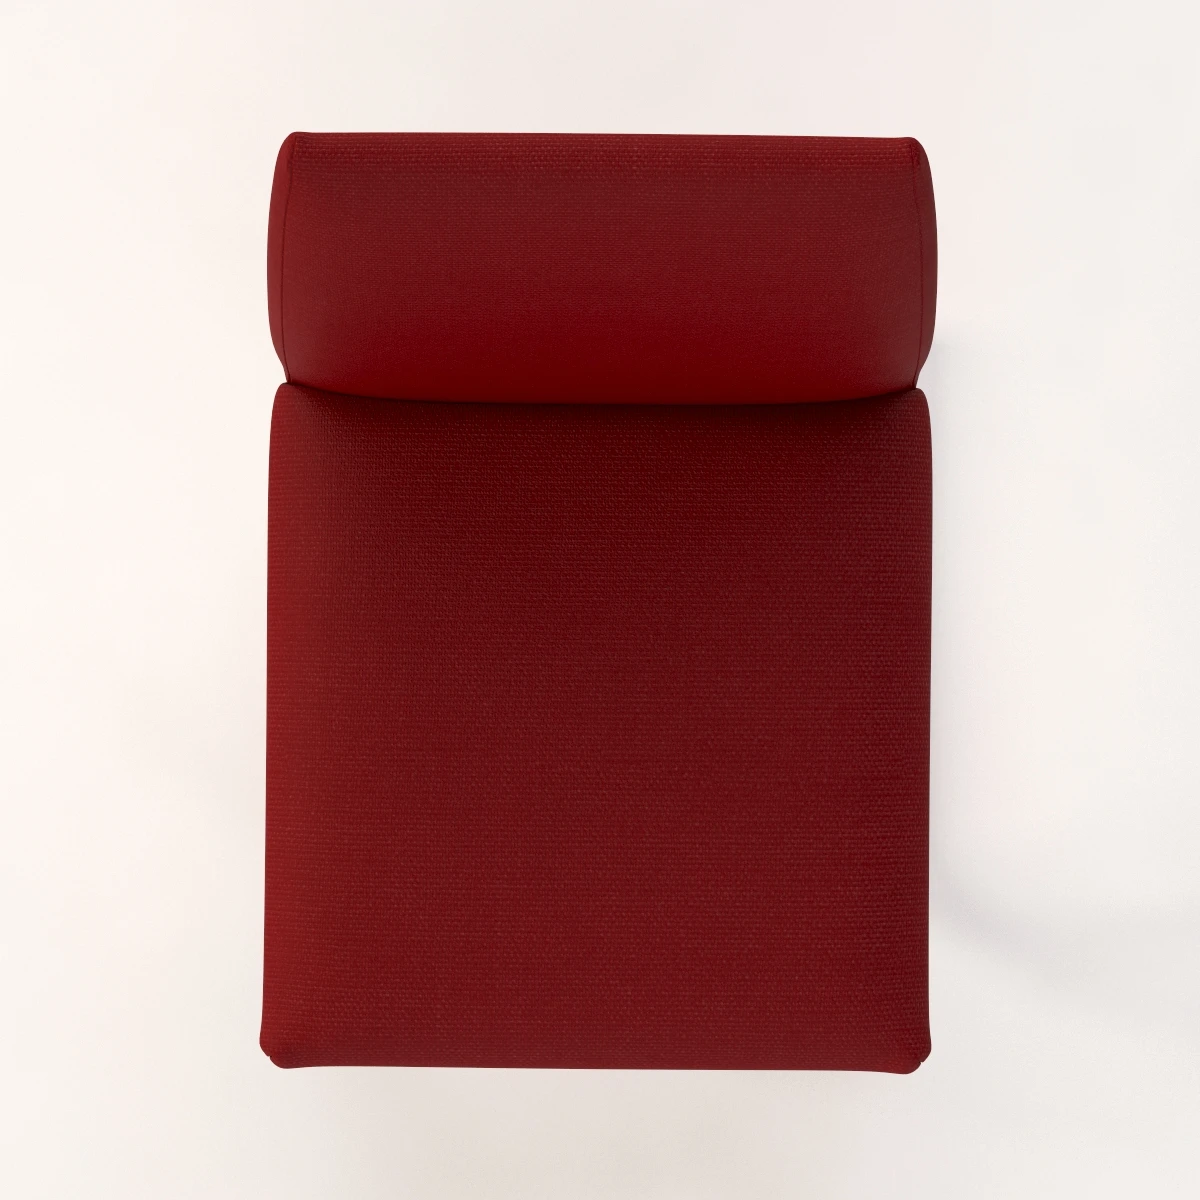 Bontempi Casa Hisa Upholstered Dining Chair 3D Model_09